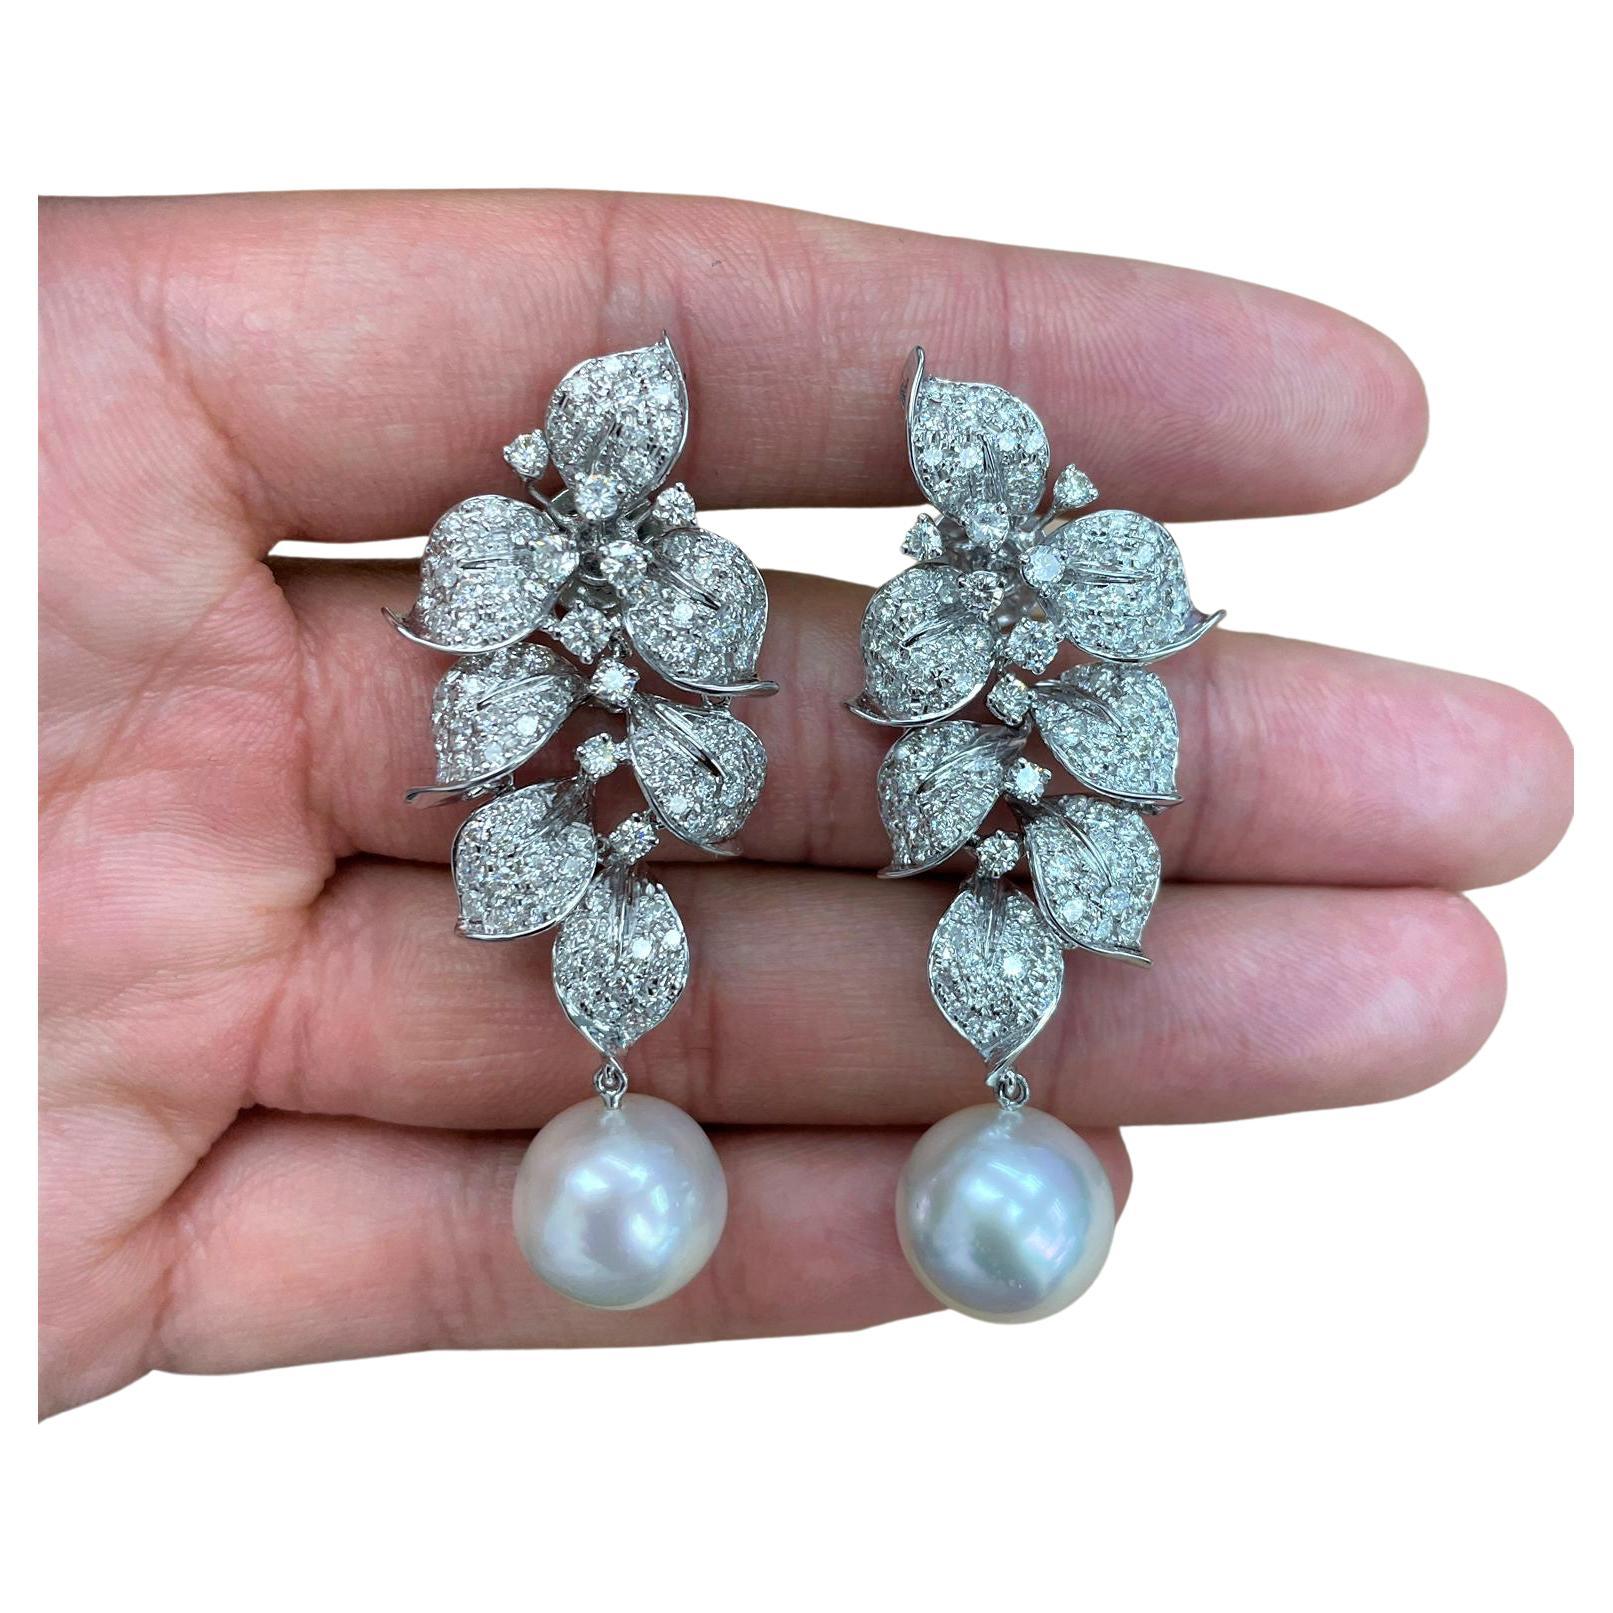 Importantes boucles d'oreilles en or 18 carats avec grande perle des mers du Sud et diamants, 21 500 $, neuves avec étiquette